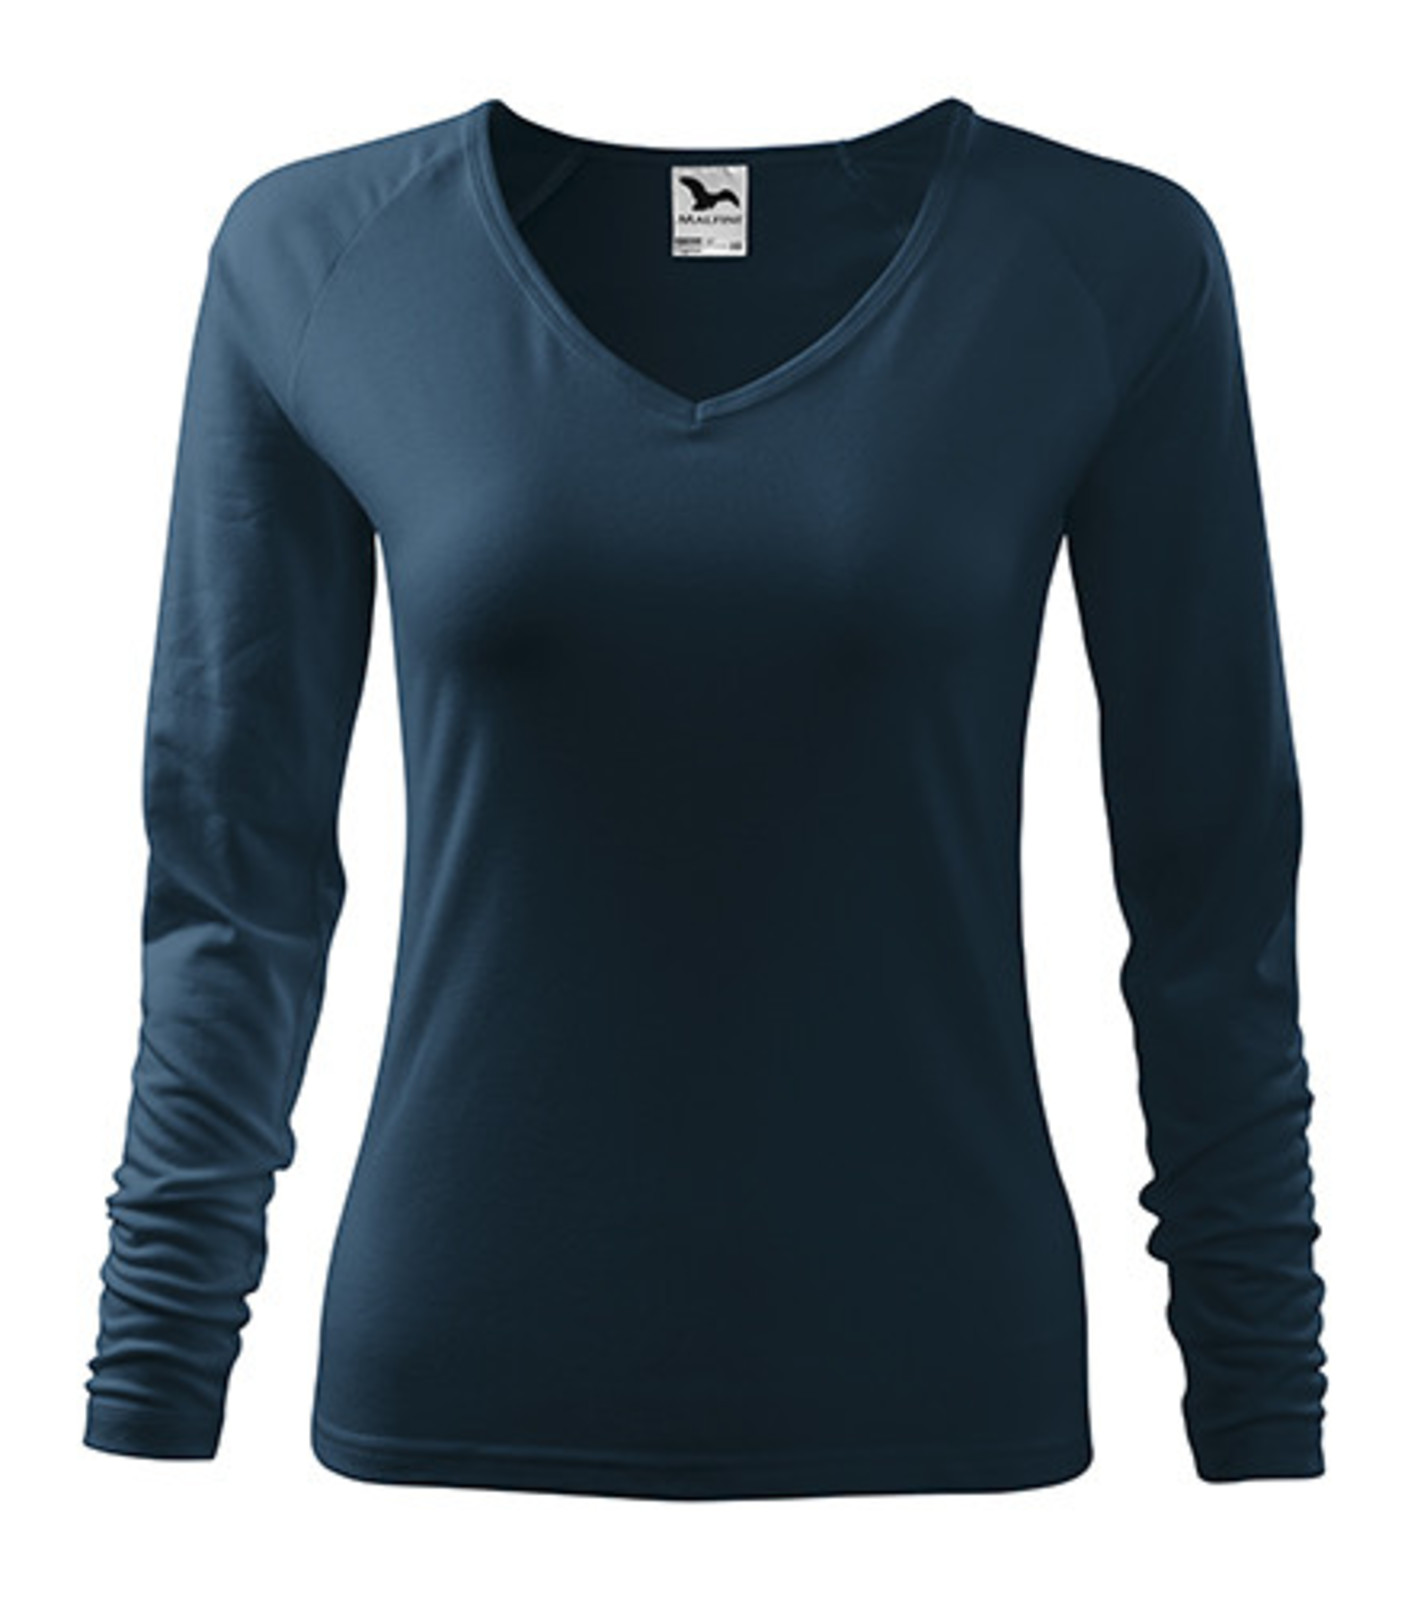 Dámske tričko s dlhým rukávom Adler Elegance 127 - veľkosť: M, farba: tmavo modrá